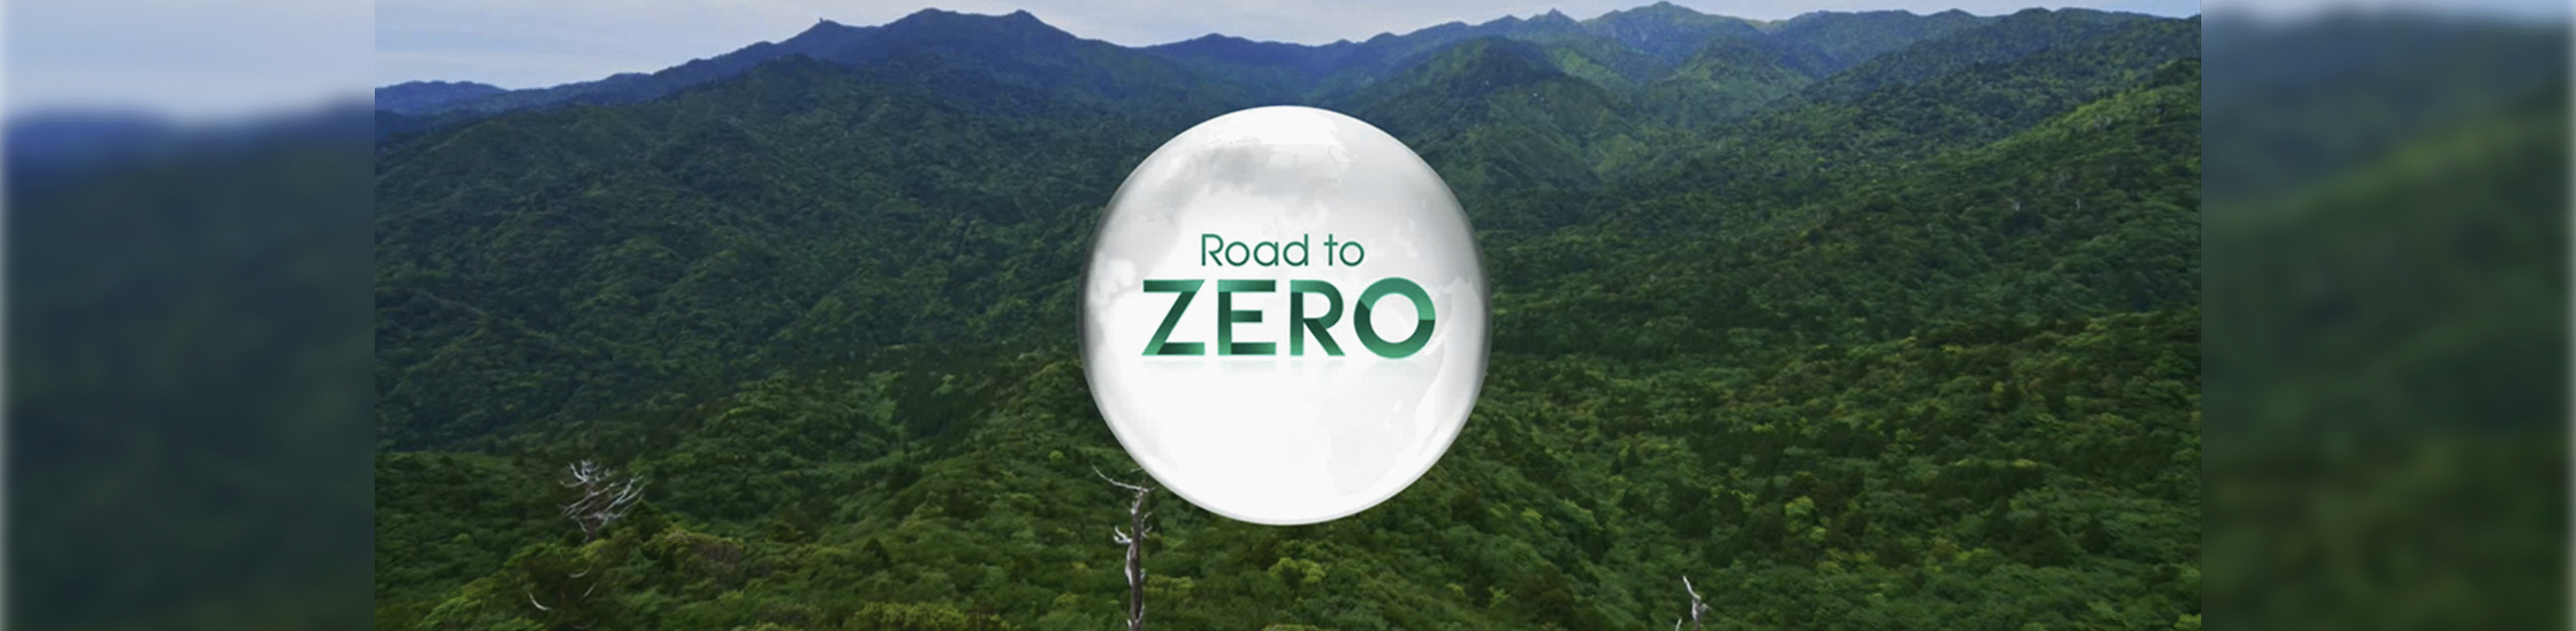 Road to ZERO logo